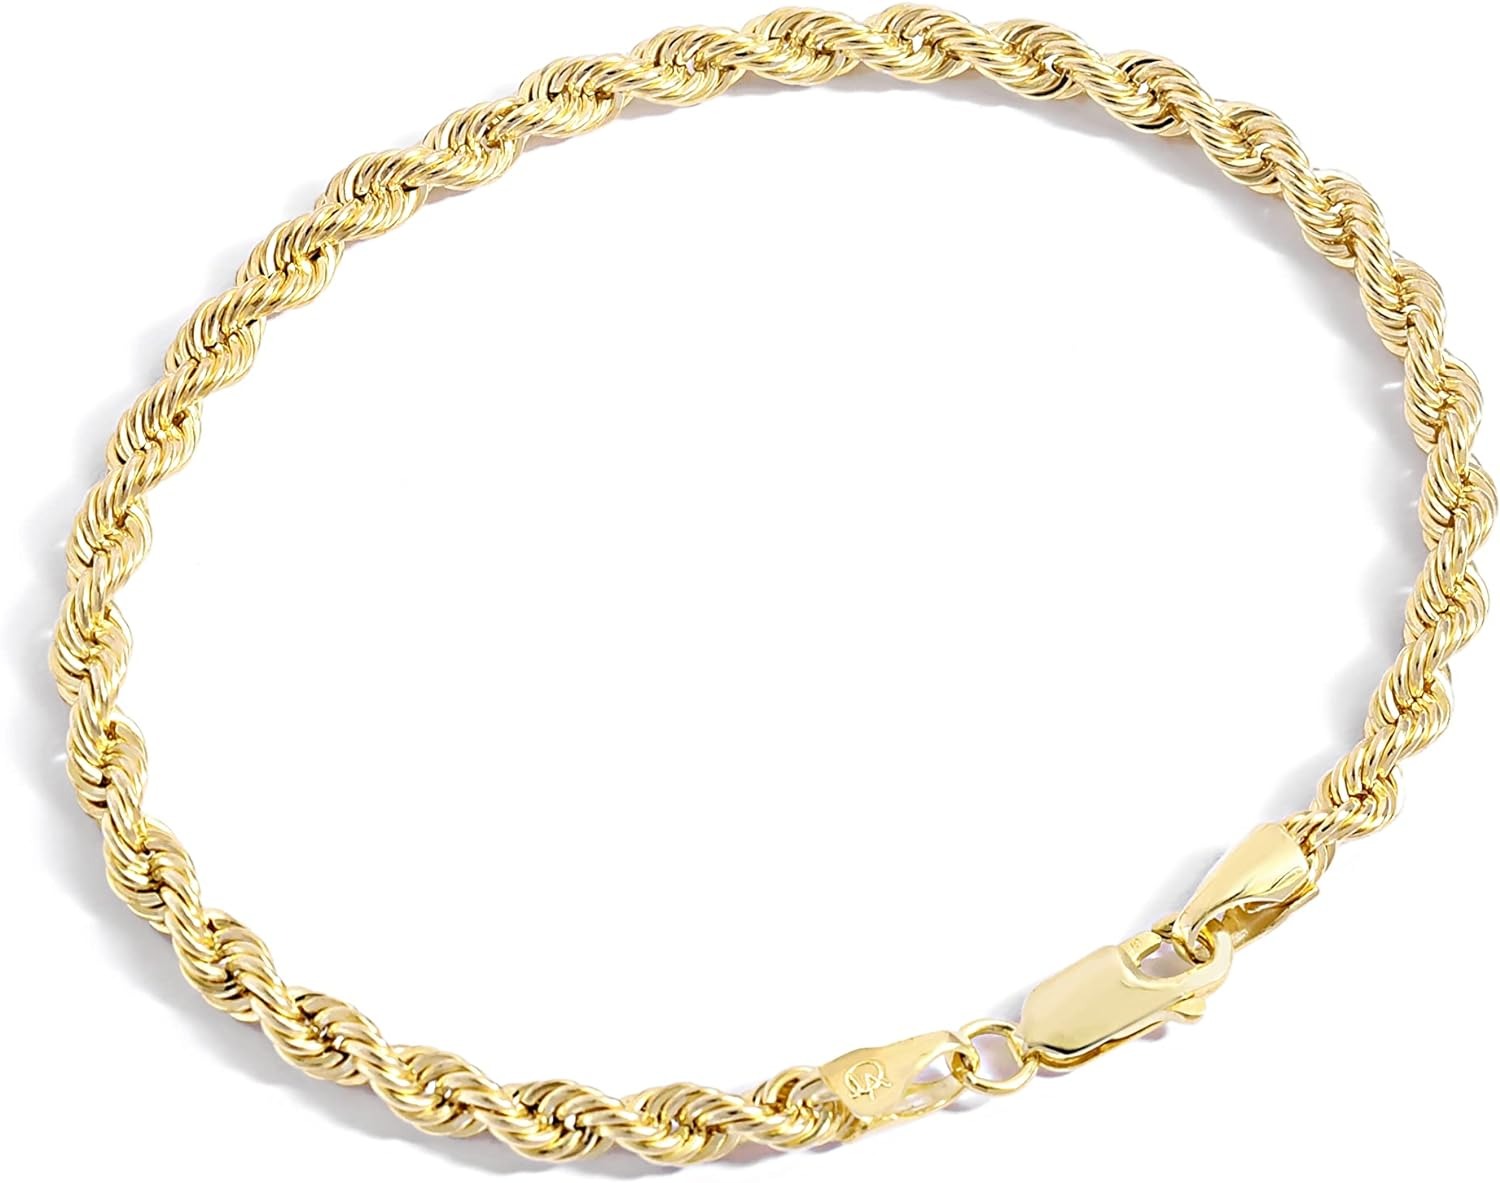 Kolekcja bransoletek z łańcuszkiem wypełnionym złotem Atelier - 14-karatowe bransoletki z łańcuszka z żółtego złota wypełnionego liną dla kobiet i mężczyzn w różnych rozmiarach (2,7 mm, 3,8 mm)